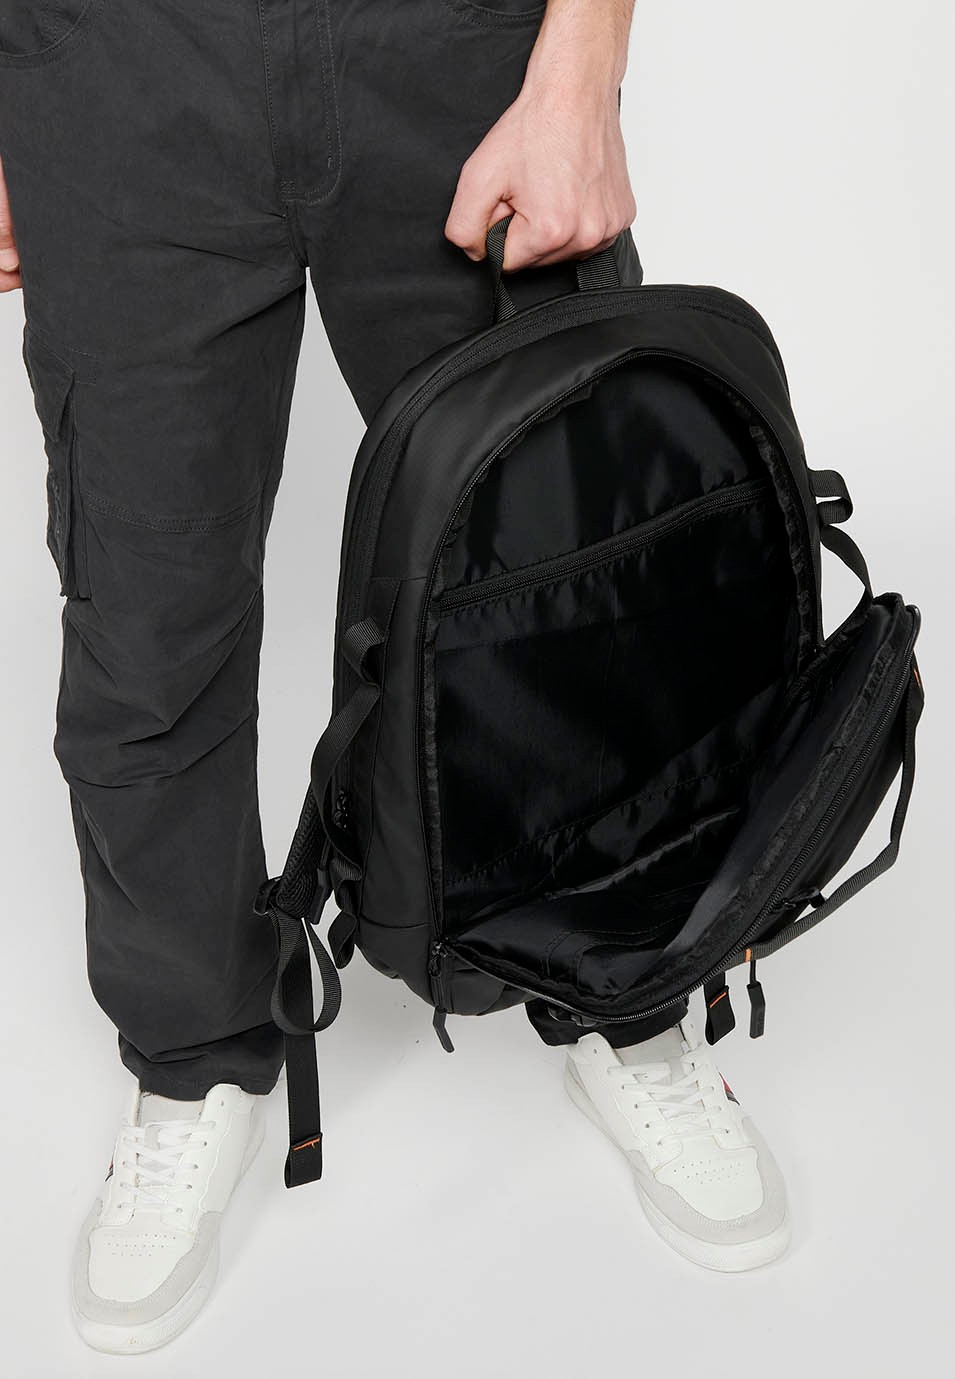 Koröshi-Rucksack mit zwei Reißverschlussfächern, eines für einen Laptop, und verstellbaren Trägern in Schwarz 7